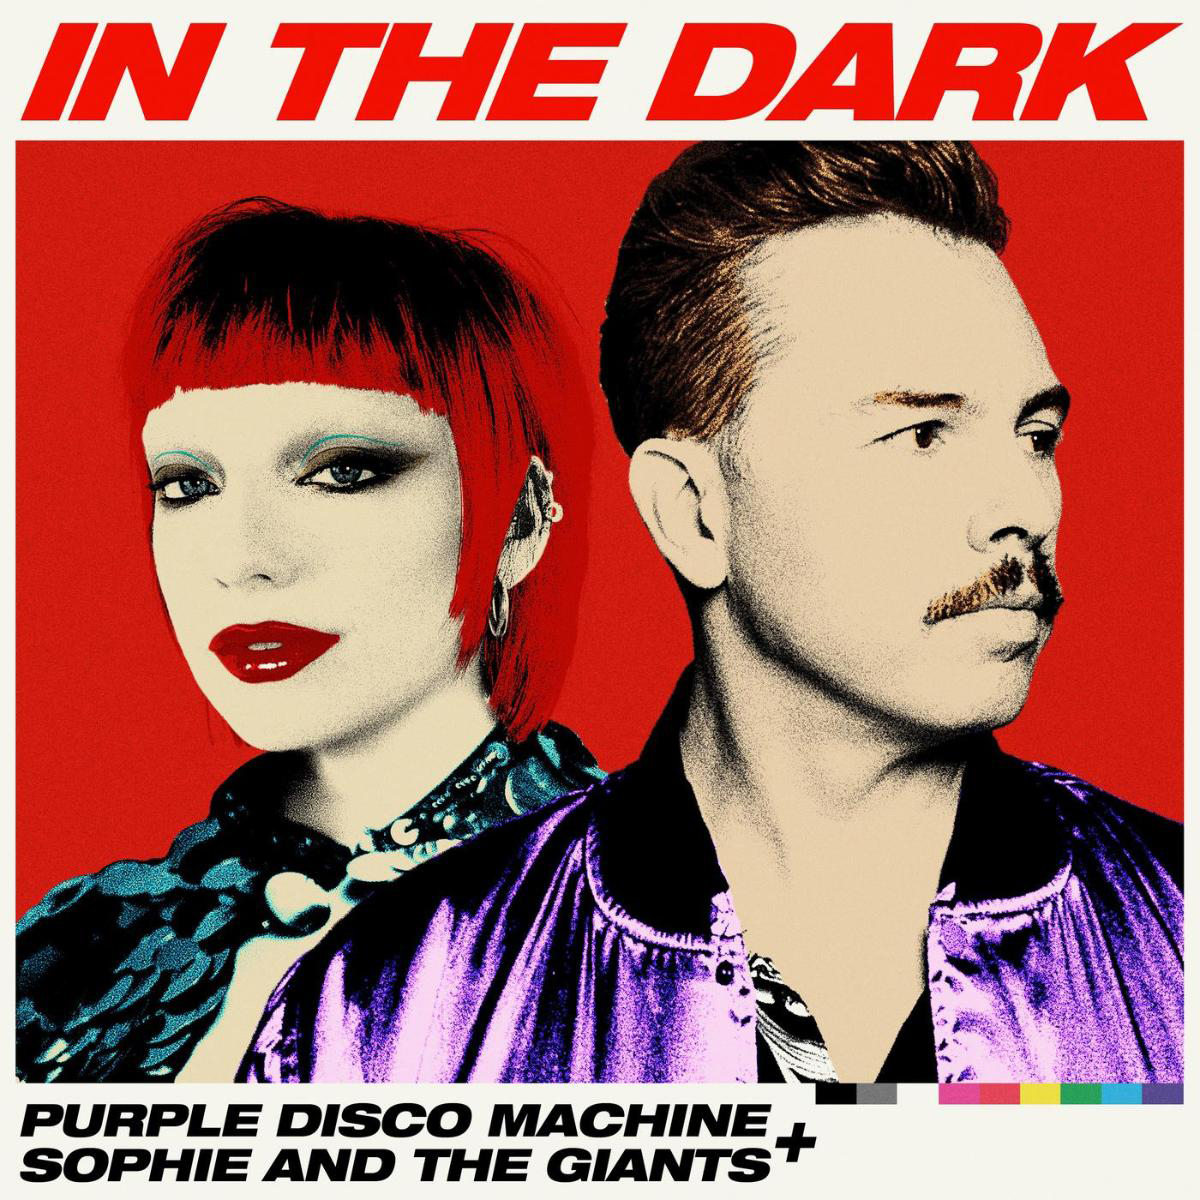 Das Cover der Single "In The Dark" von Purple Disco Machine und Sophie And The Giants zeigt die beiden Musiker im Porträt. Das Foto ist sehr bunt, knallig und im Stil der 80er gehalten.